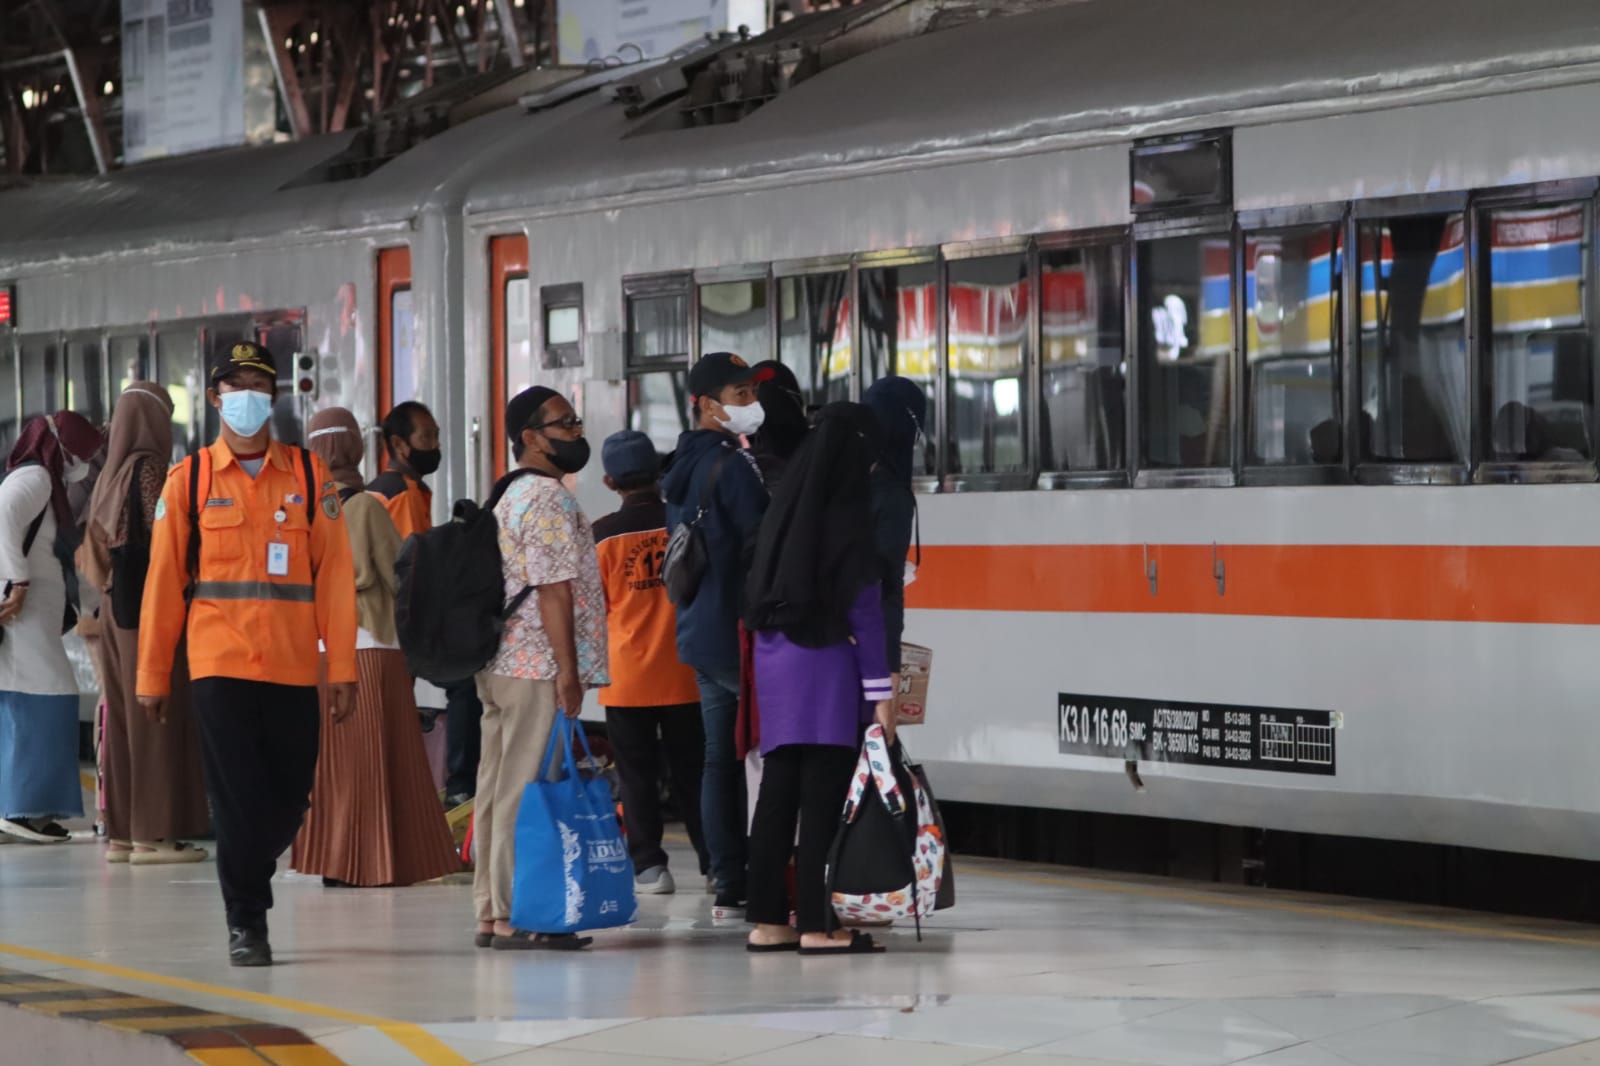 Cara Mudah Beli dan Booking Tiket Kereta Api Online, Termasuk Cek Harga Tiket dari Stasiun Purwokerto 